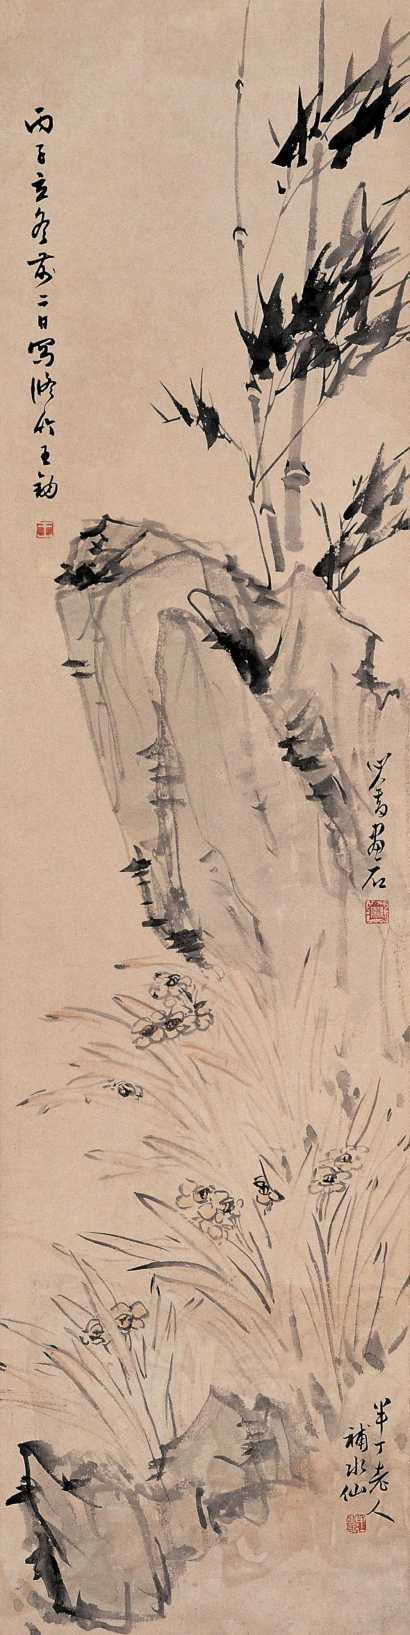 溥儒 陈半丁 王钠 丙子(1936)年作 竹石水仙 立轴